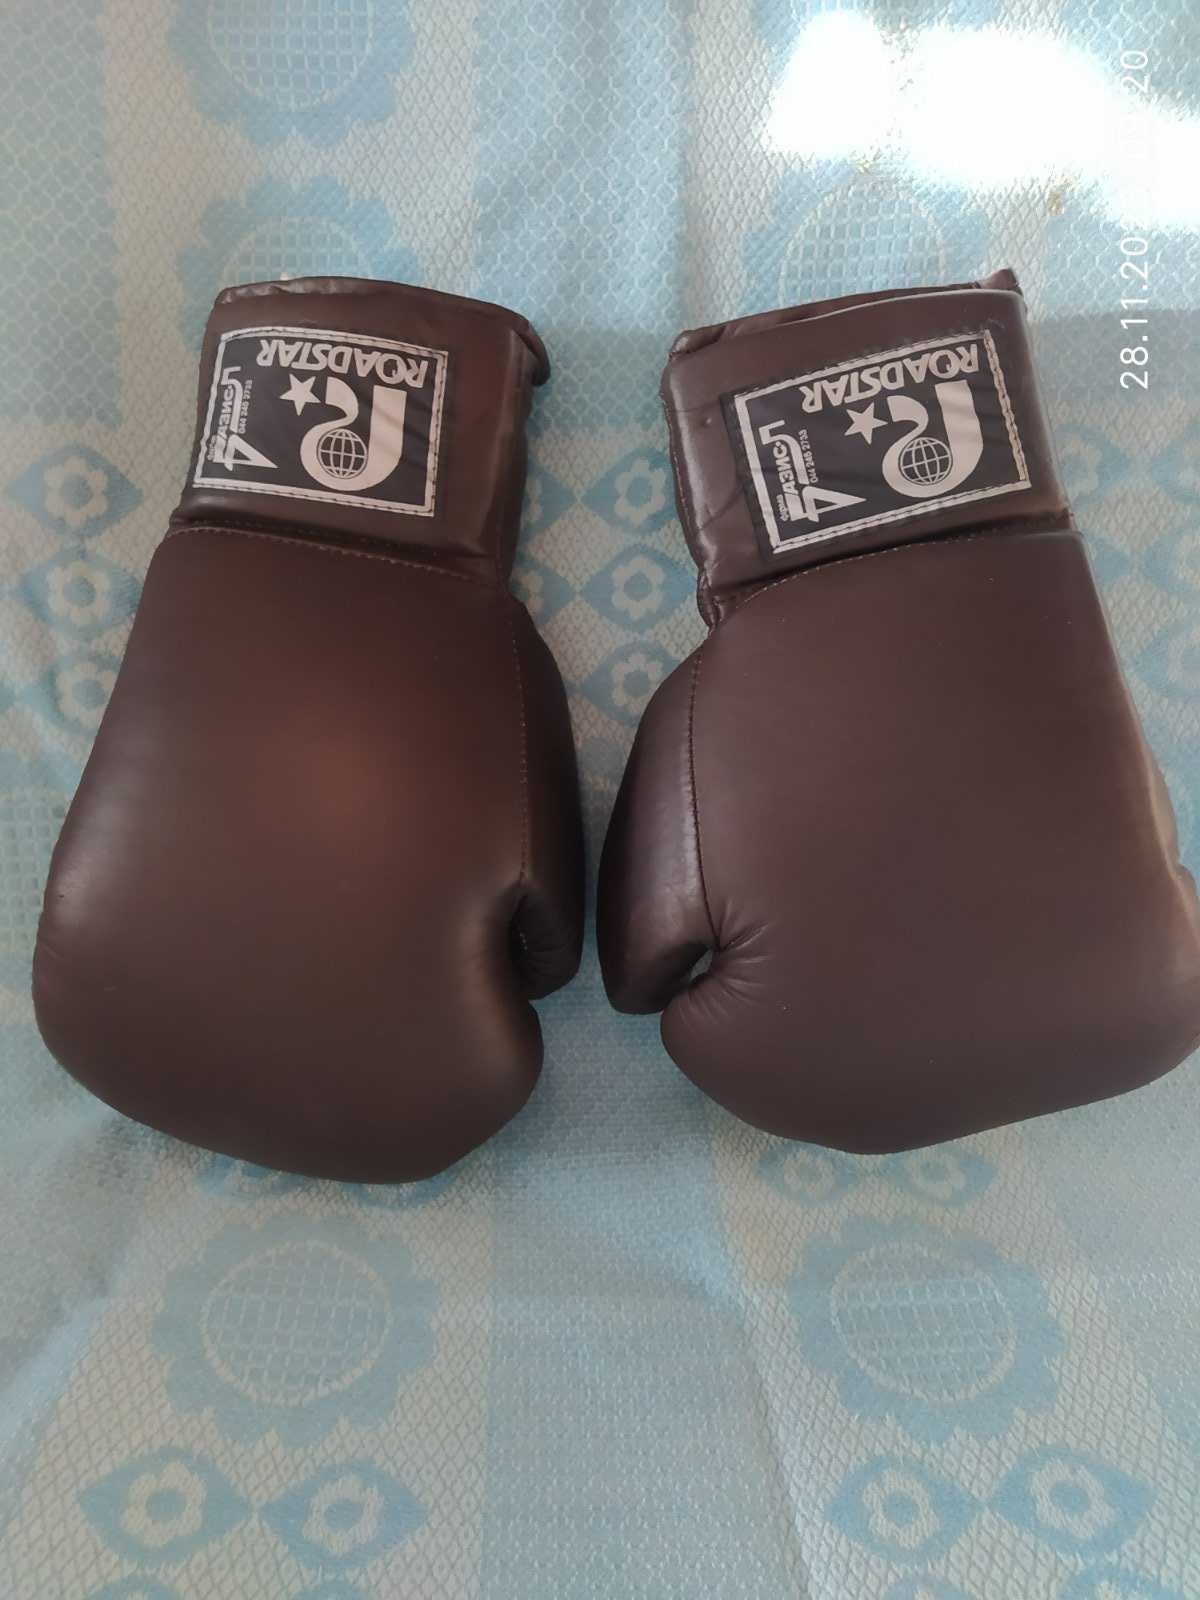 Боксерские перчатки с грушей